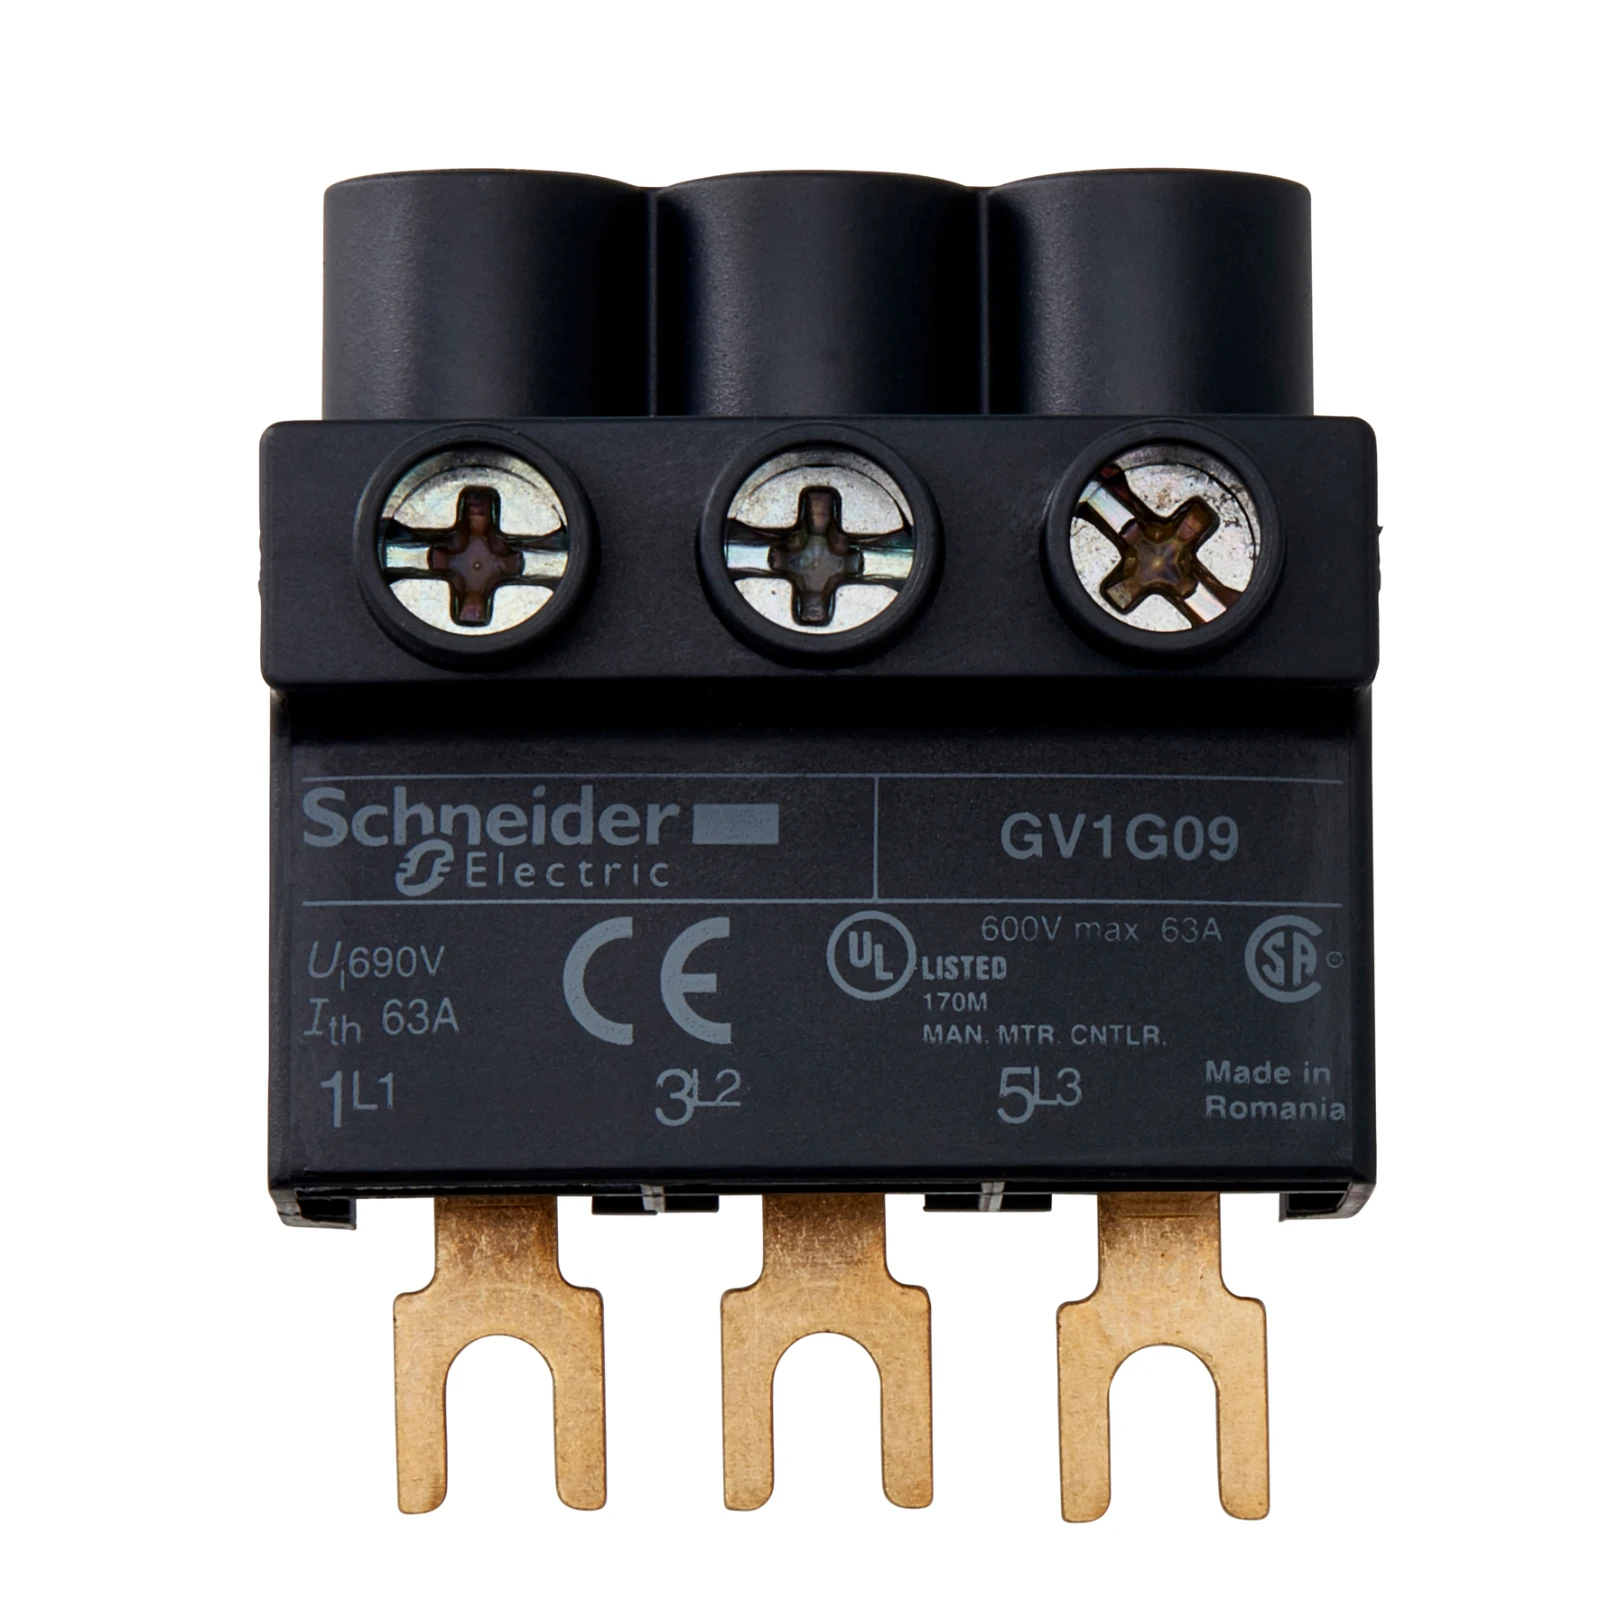 1038467 - Schneider Electric GV1G09